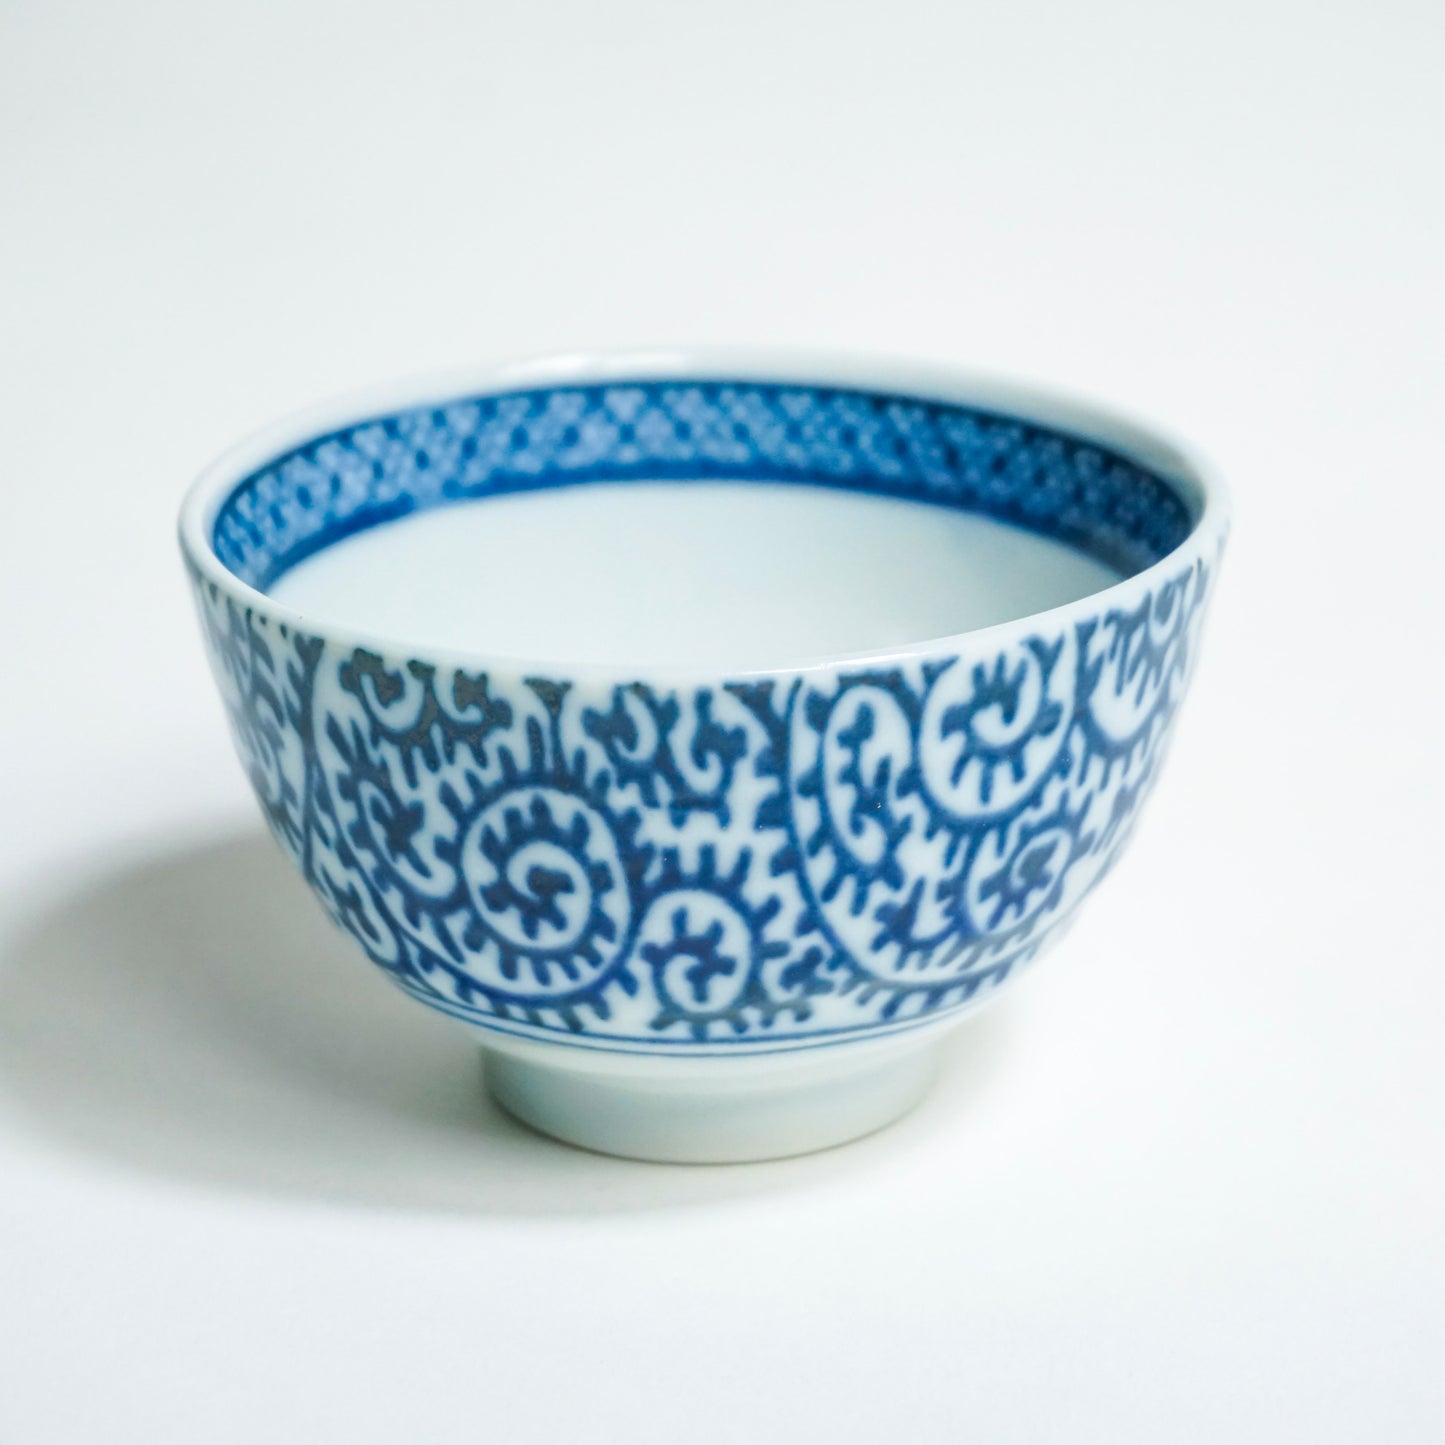 Indigo-Dyed Tea Bowl